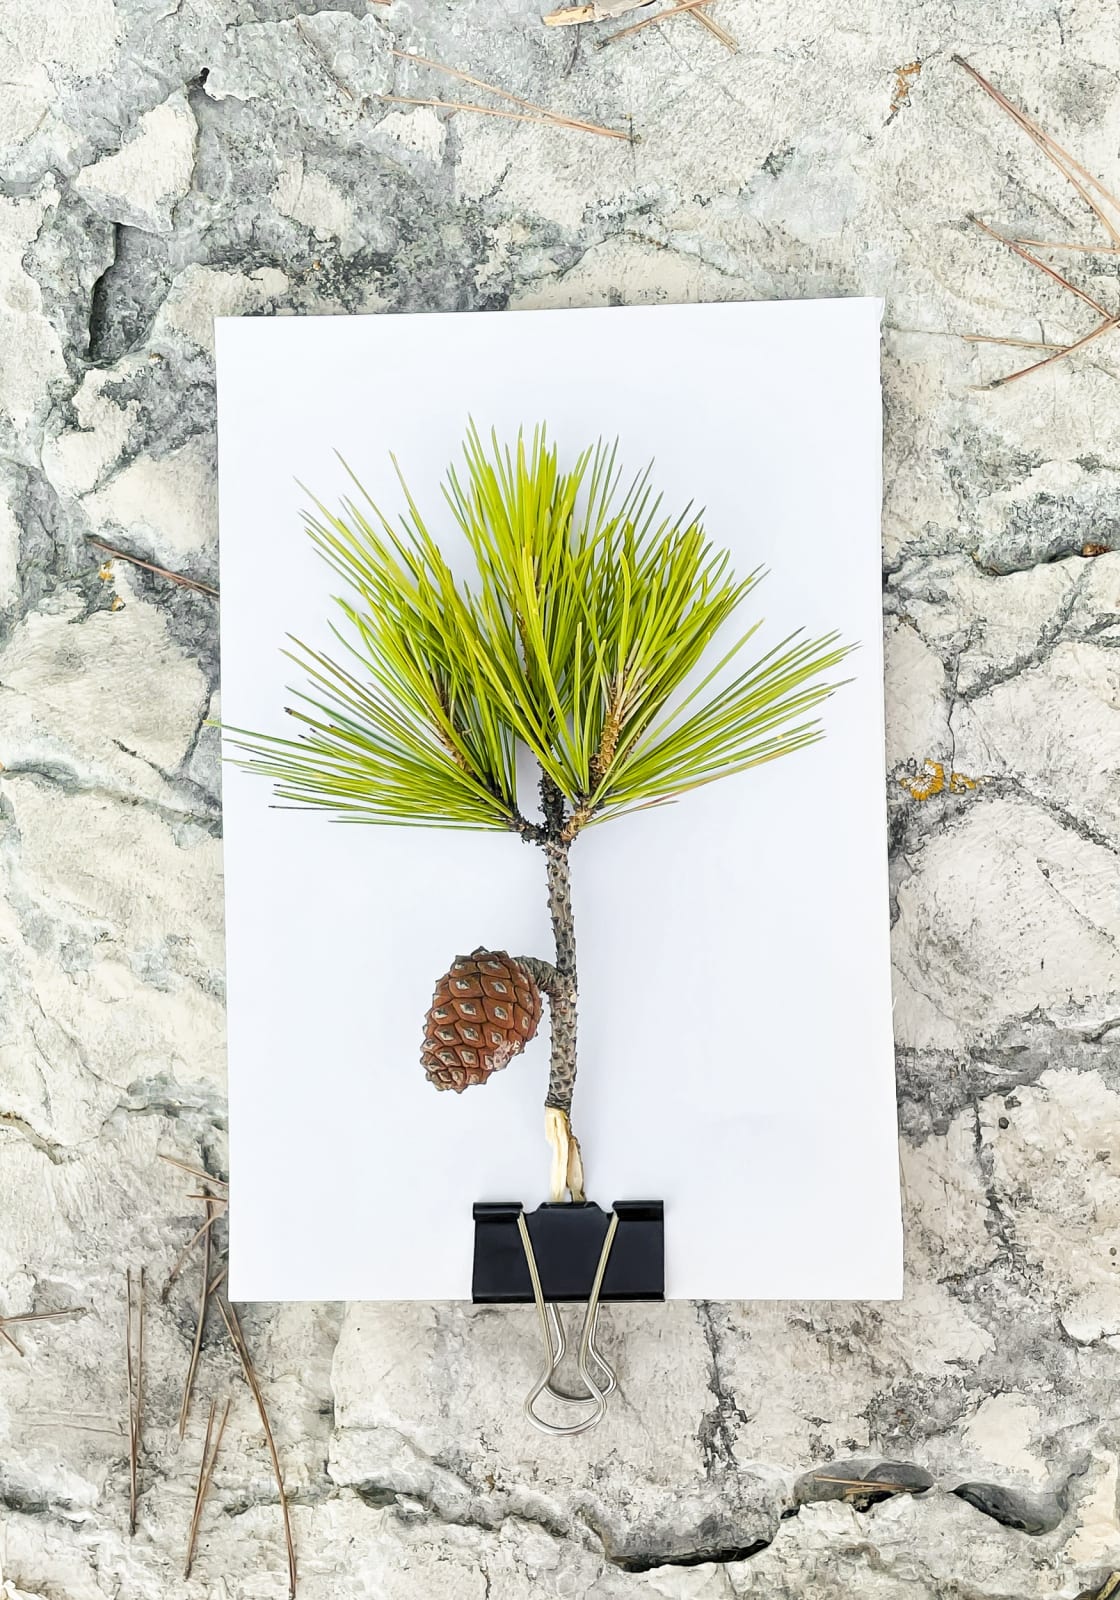 Tilyen Mucik, Pinus pinaster, 2021